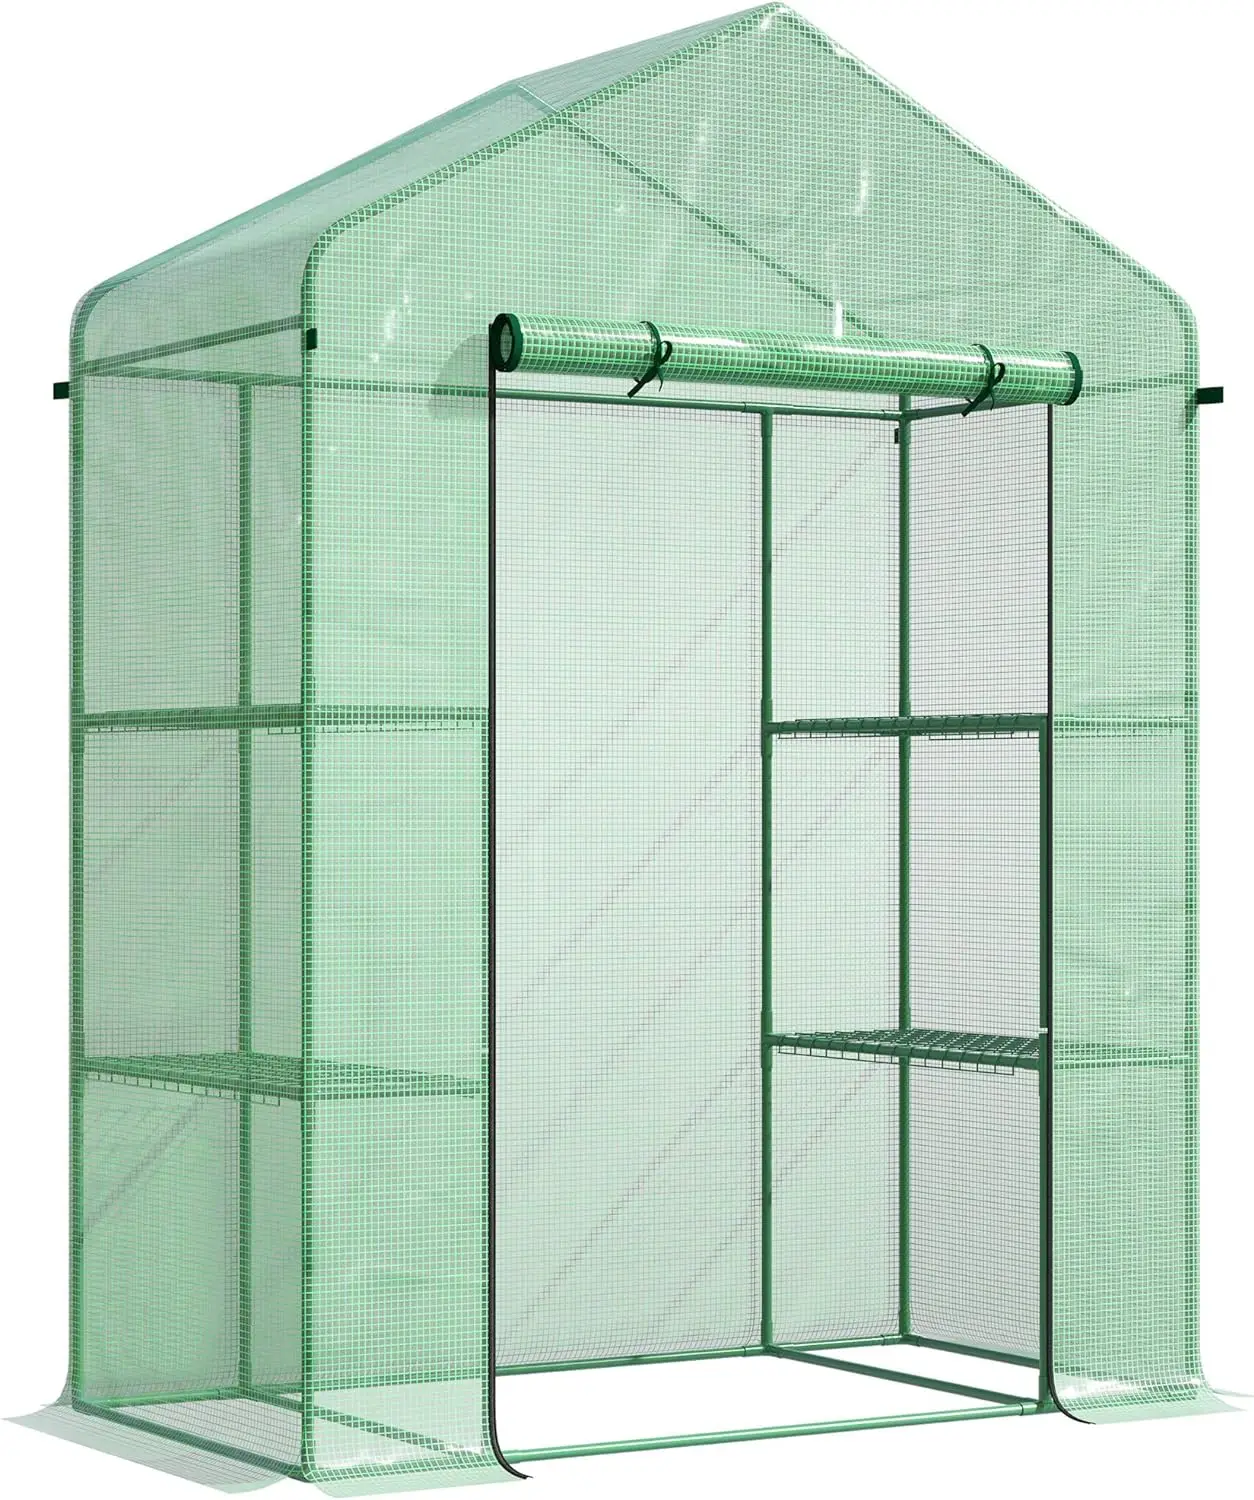 ミニウォークイン温室キット、3層棚付きポータブルグリーンハウス、ロールアップドア、耐候性クレープカバー、5x2.5x6.5'